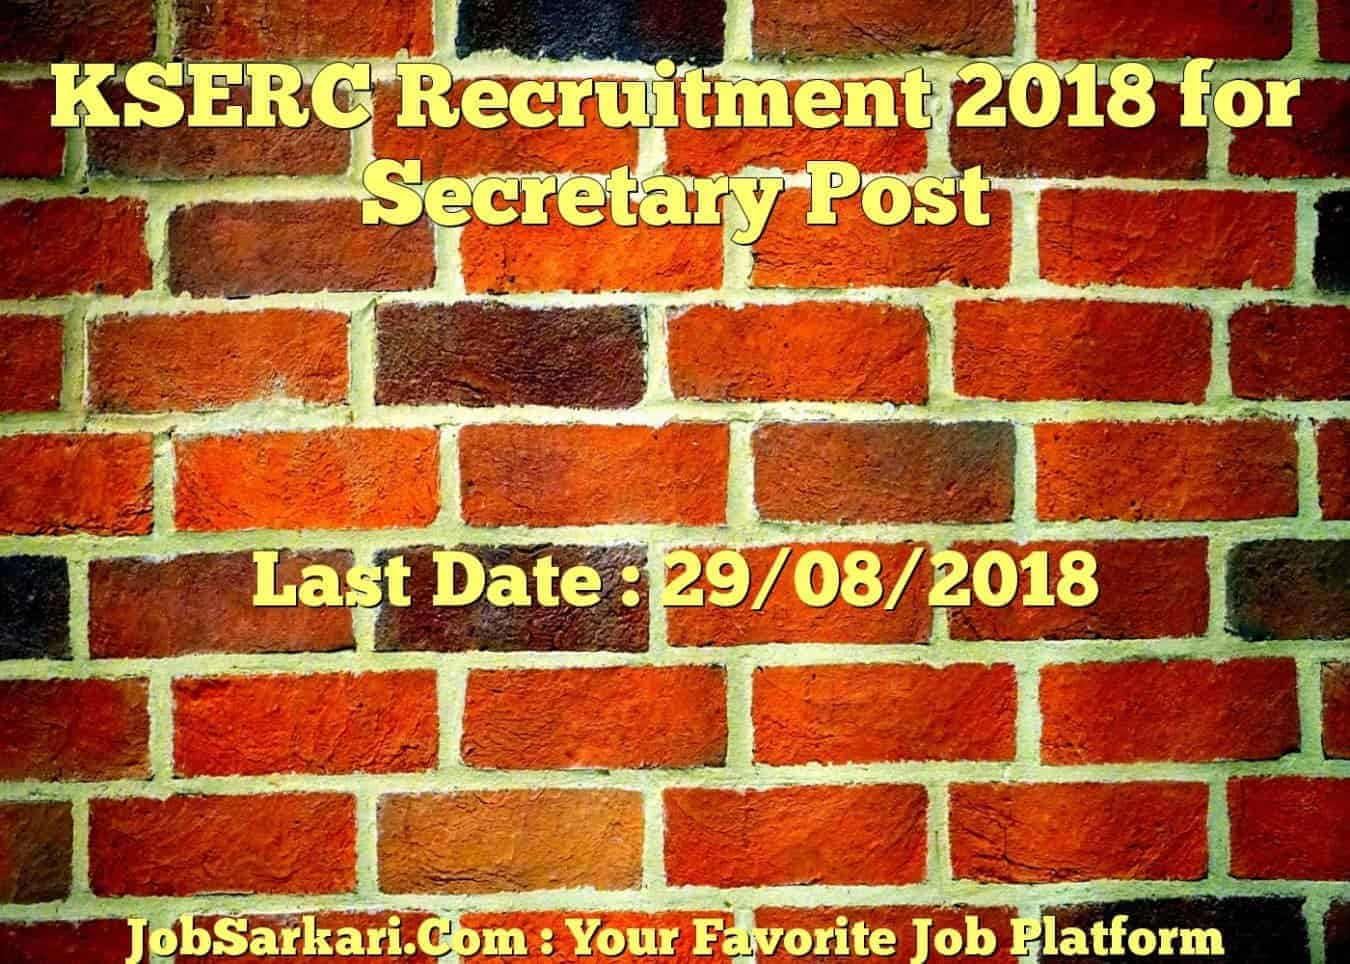 KSERC Recruitment 2018 for Secretary Post